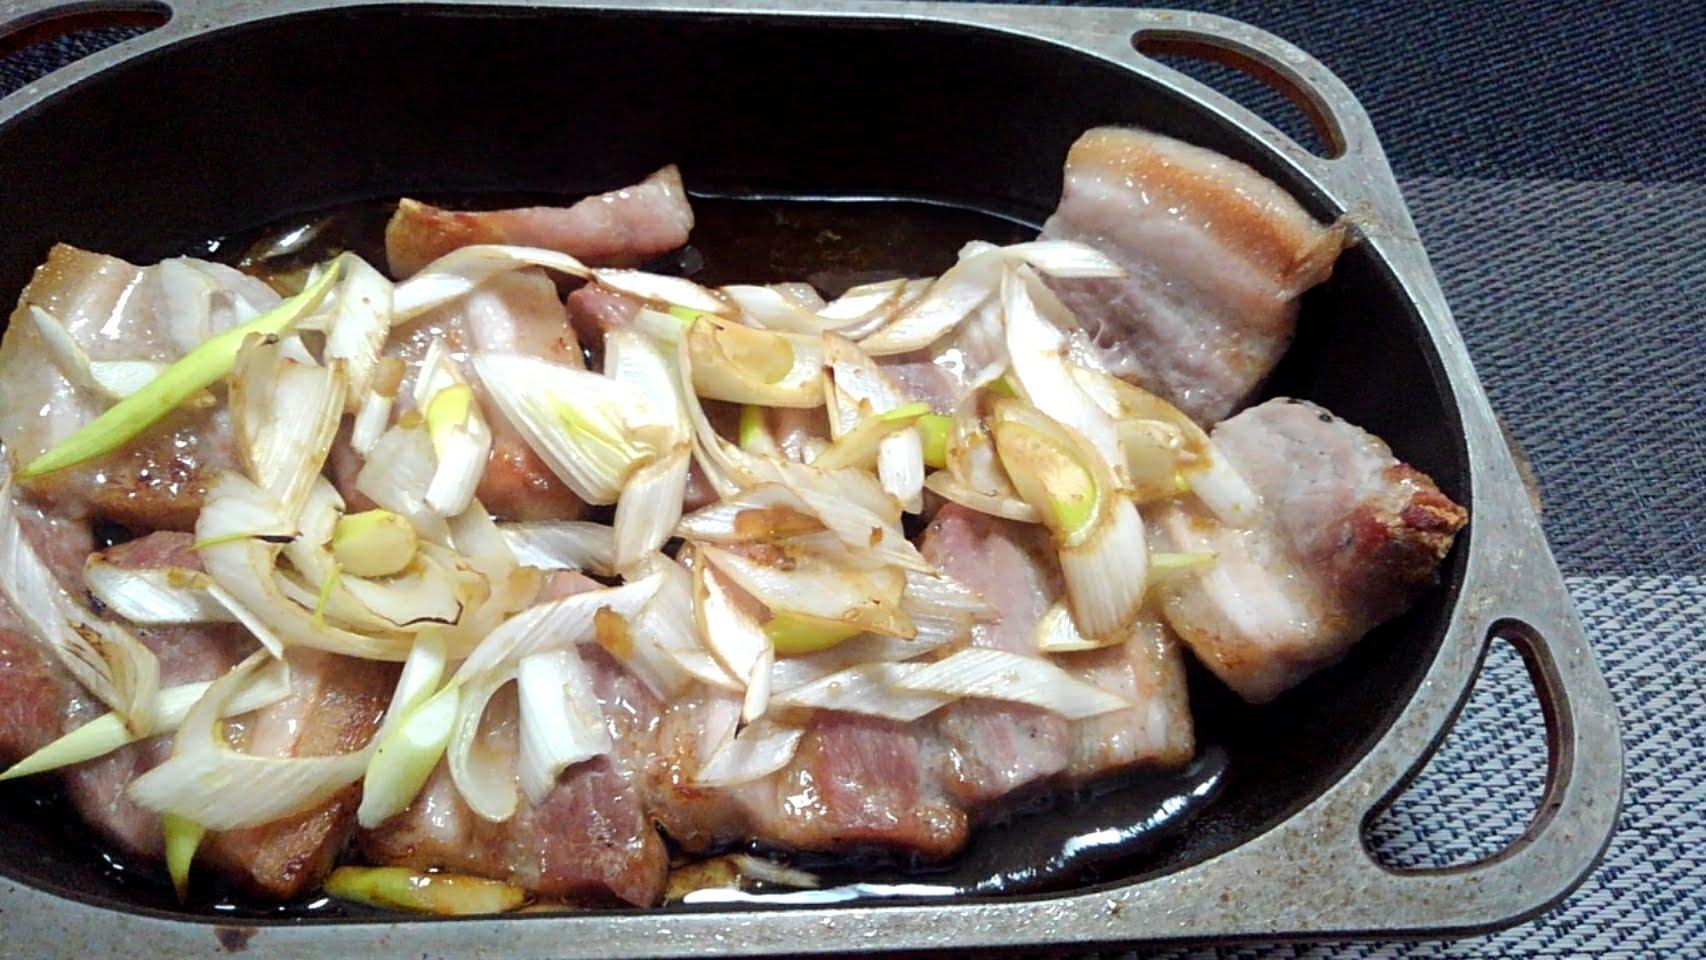 豚バラと長ネギゆず胡椒とかしポン酢のグリル焼き